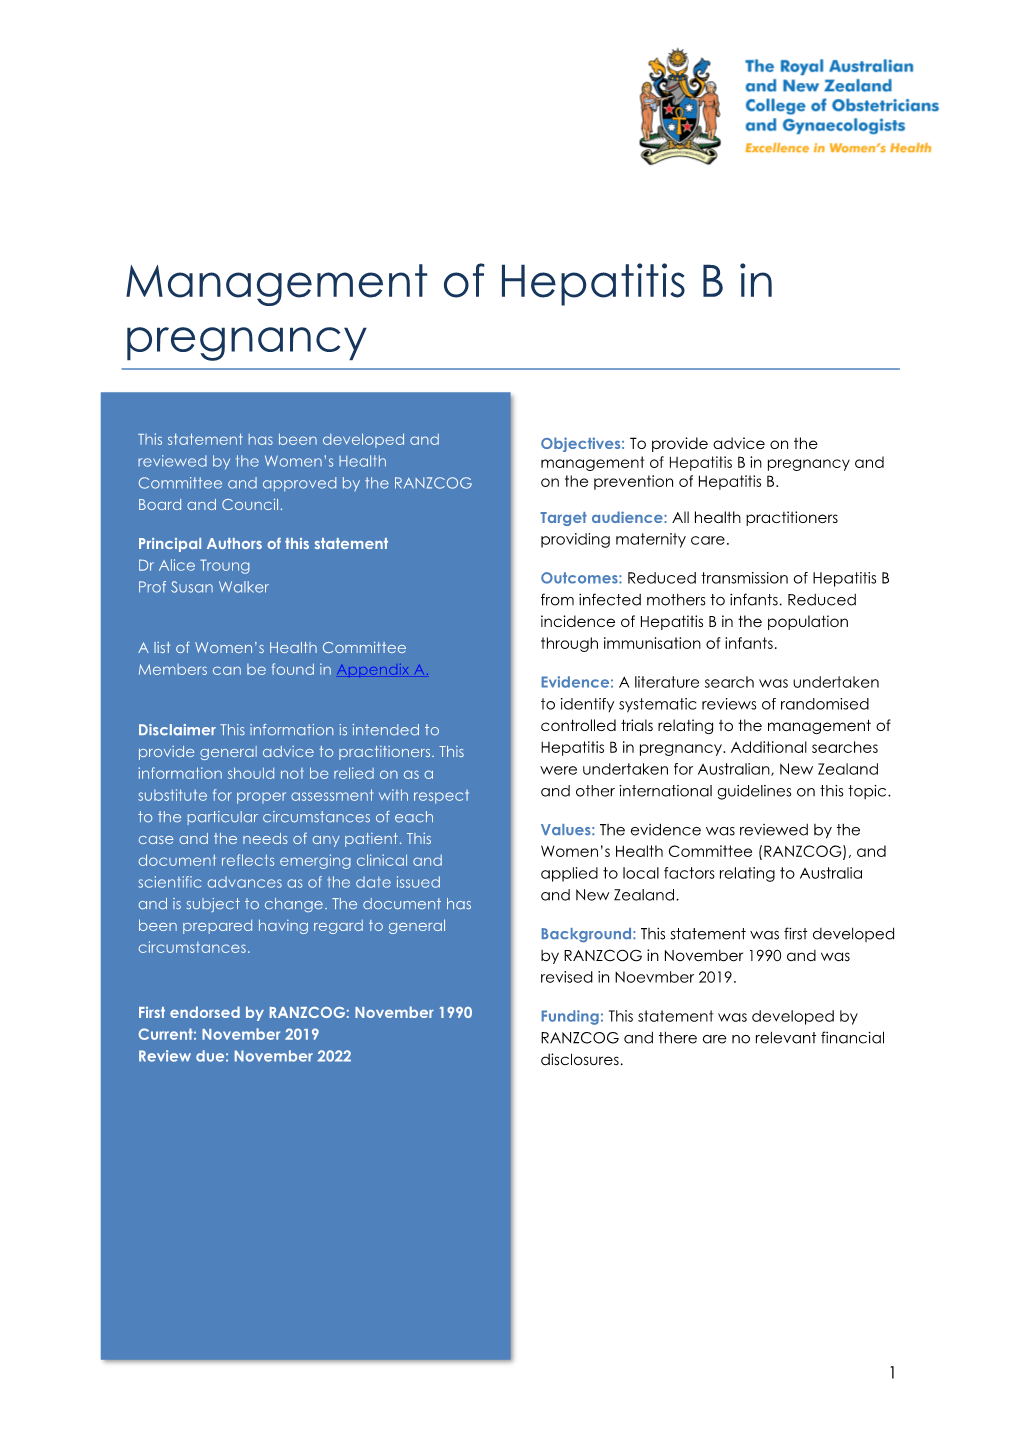 Management of Hepatitis B in Pregnancy